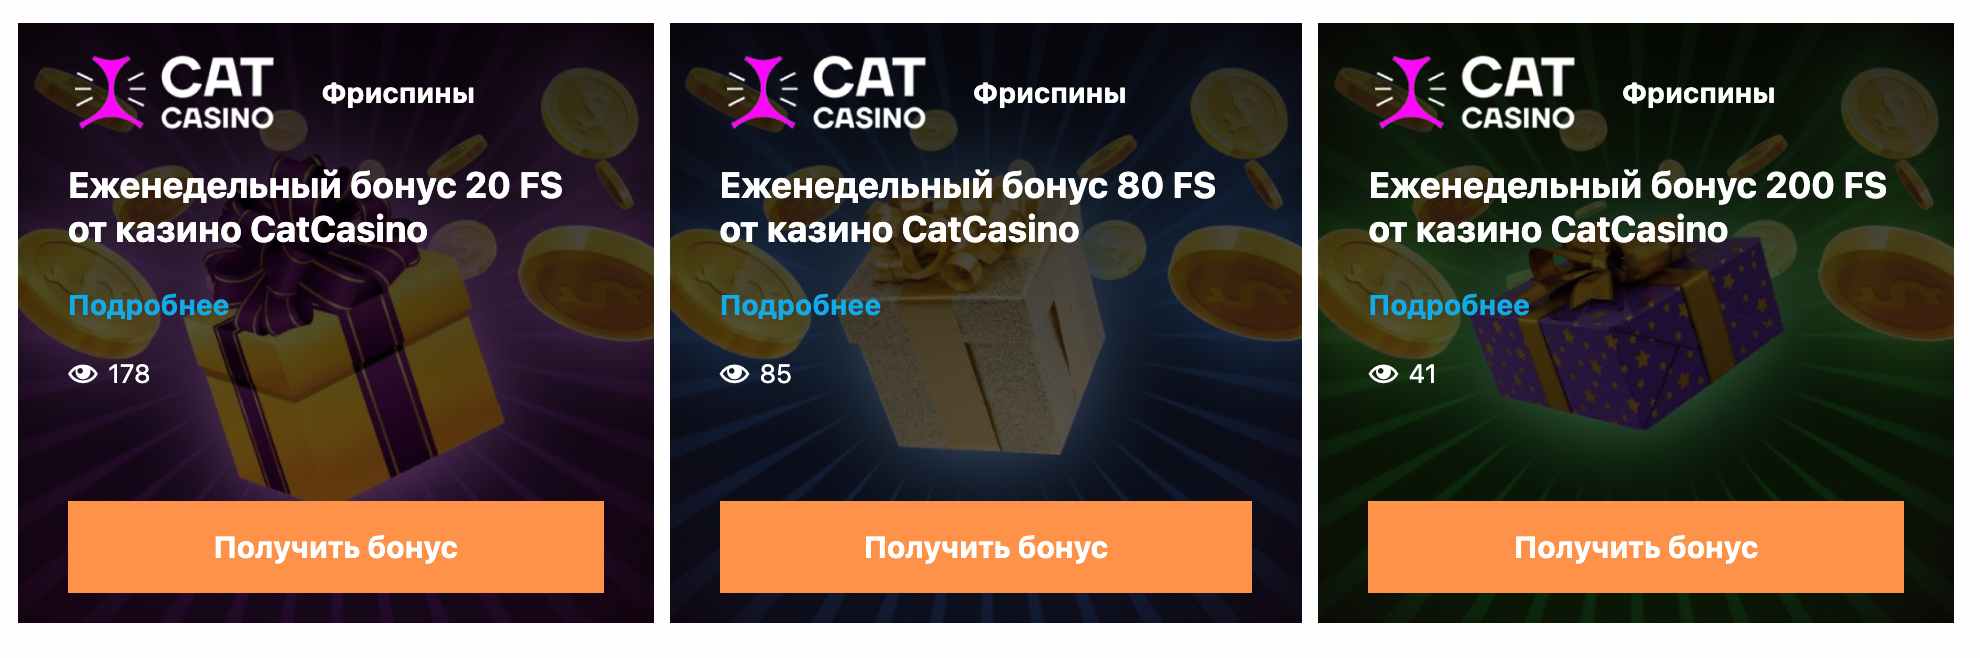 Что вы можете узнать у Билла Гейтса о cat casino